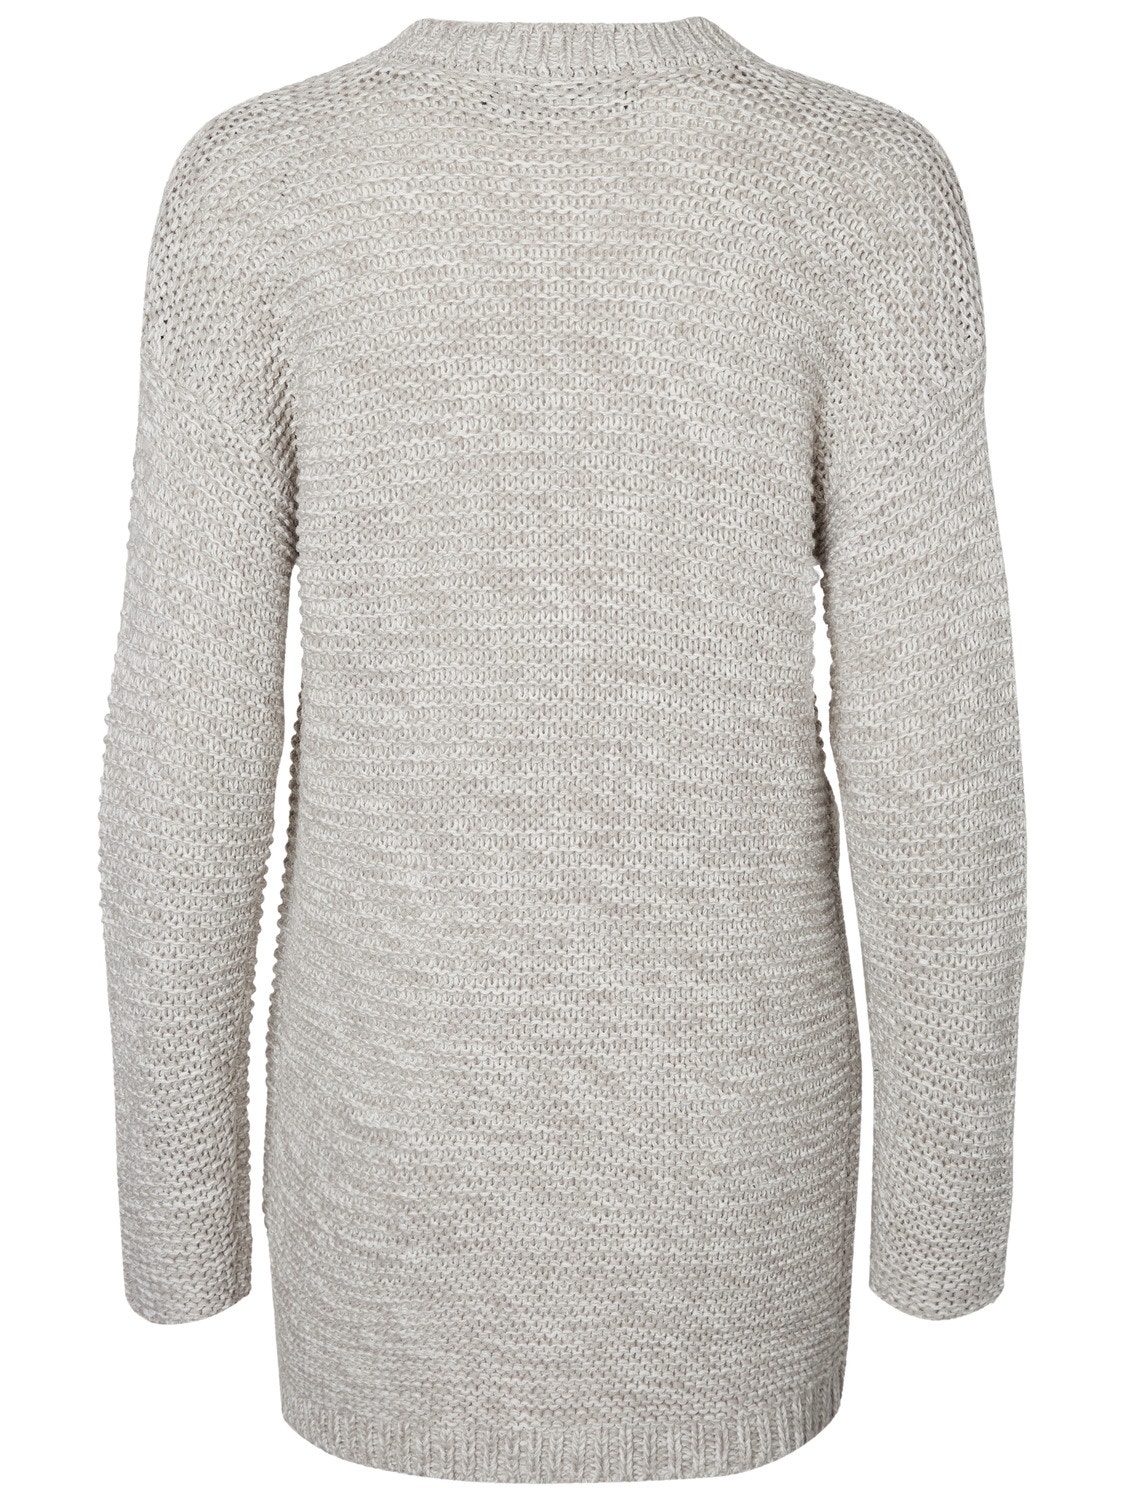 VMNO Knit Cardigan | Light Grey | Vero Moda® | Cardigans